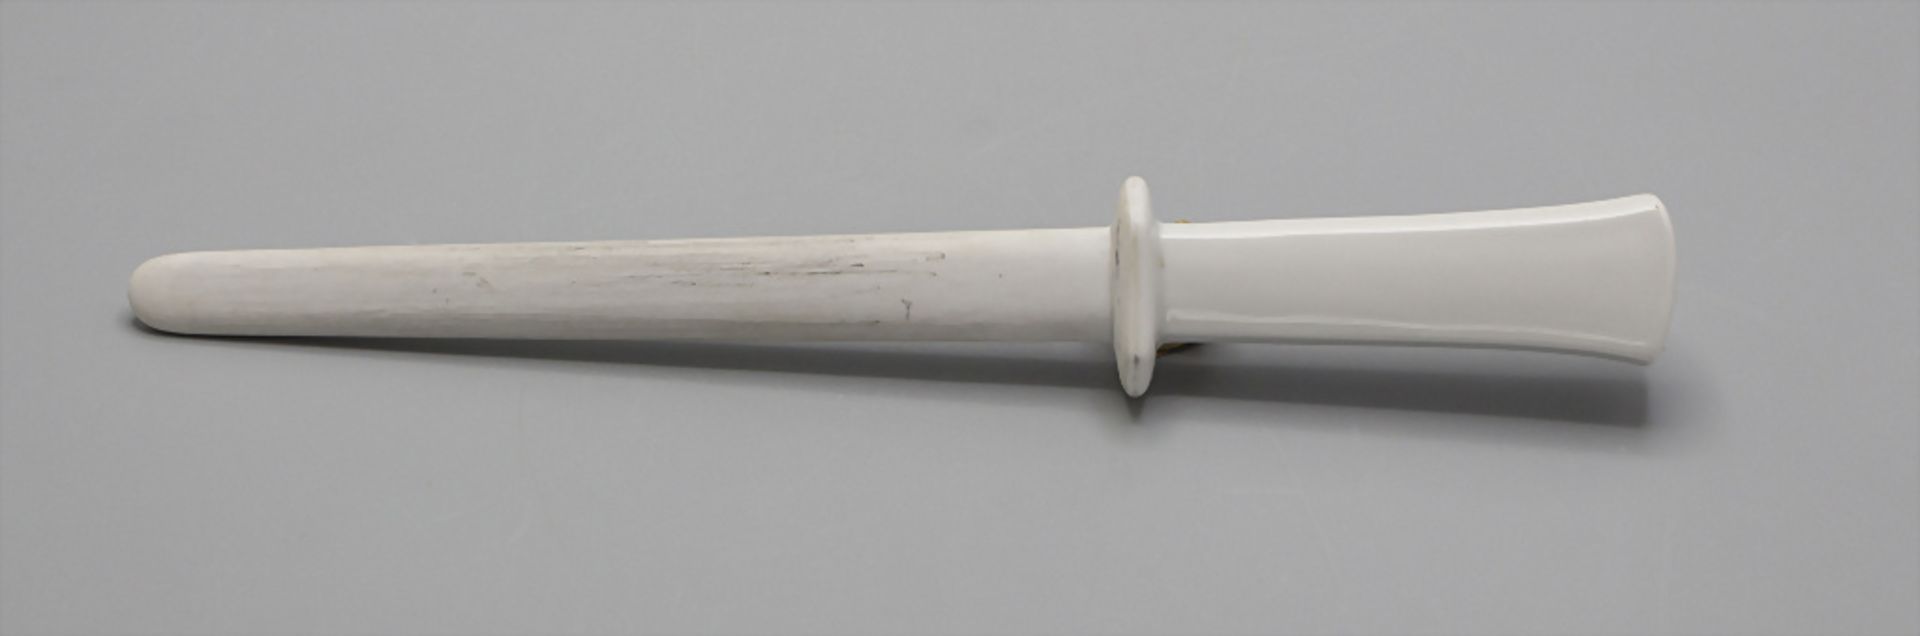 Messerschleifer / A knife sharpener, Meissen, Mitte 20. Jh. - Bild 2 aus 3